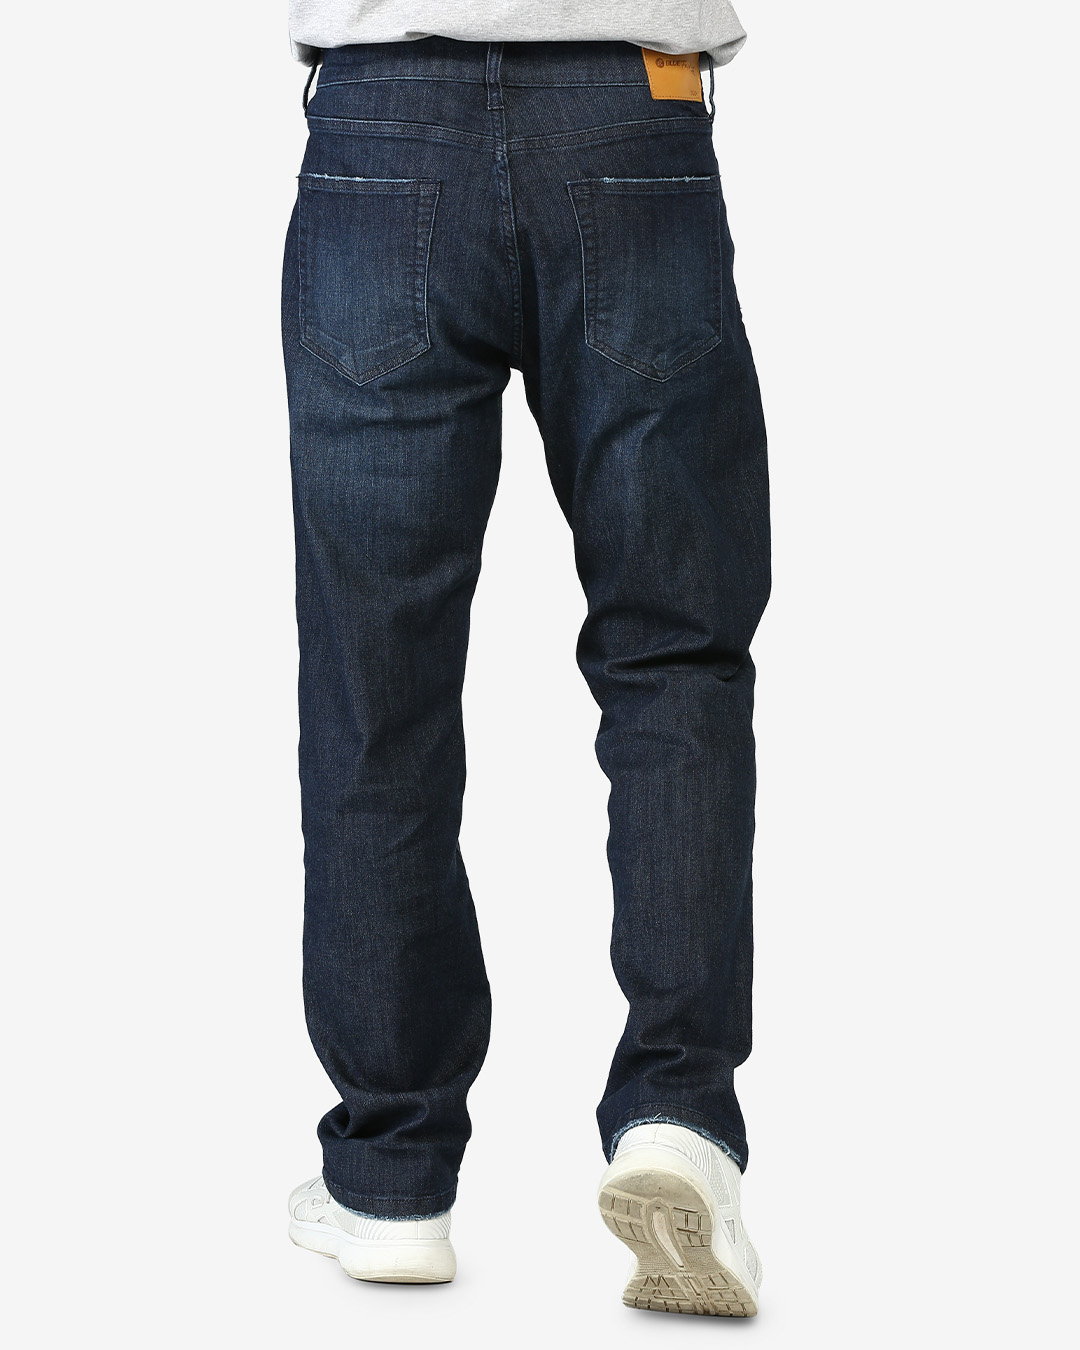 Quần jeans nam straight fit AVAFashion TNCPRTL - Xanh đen đậm